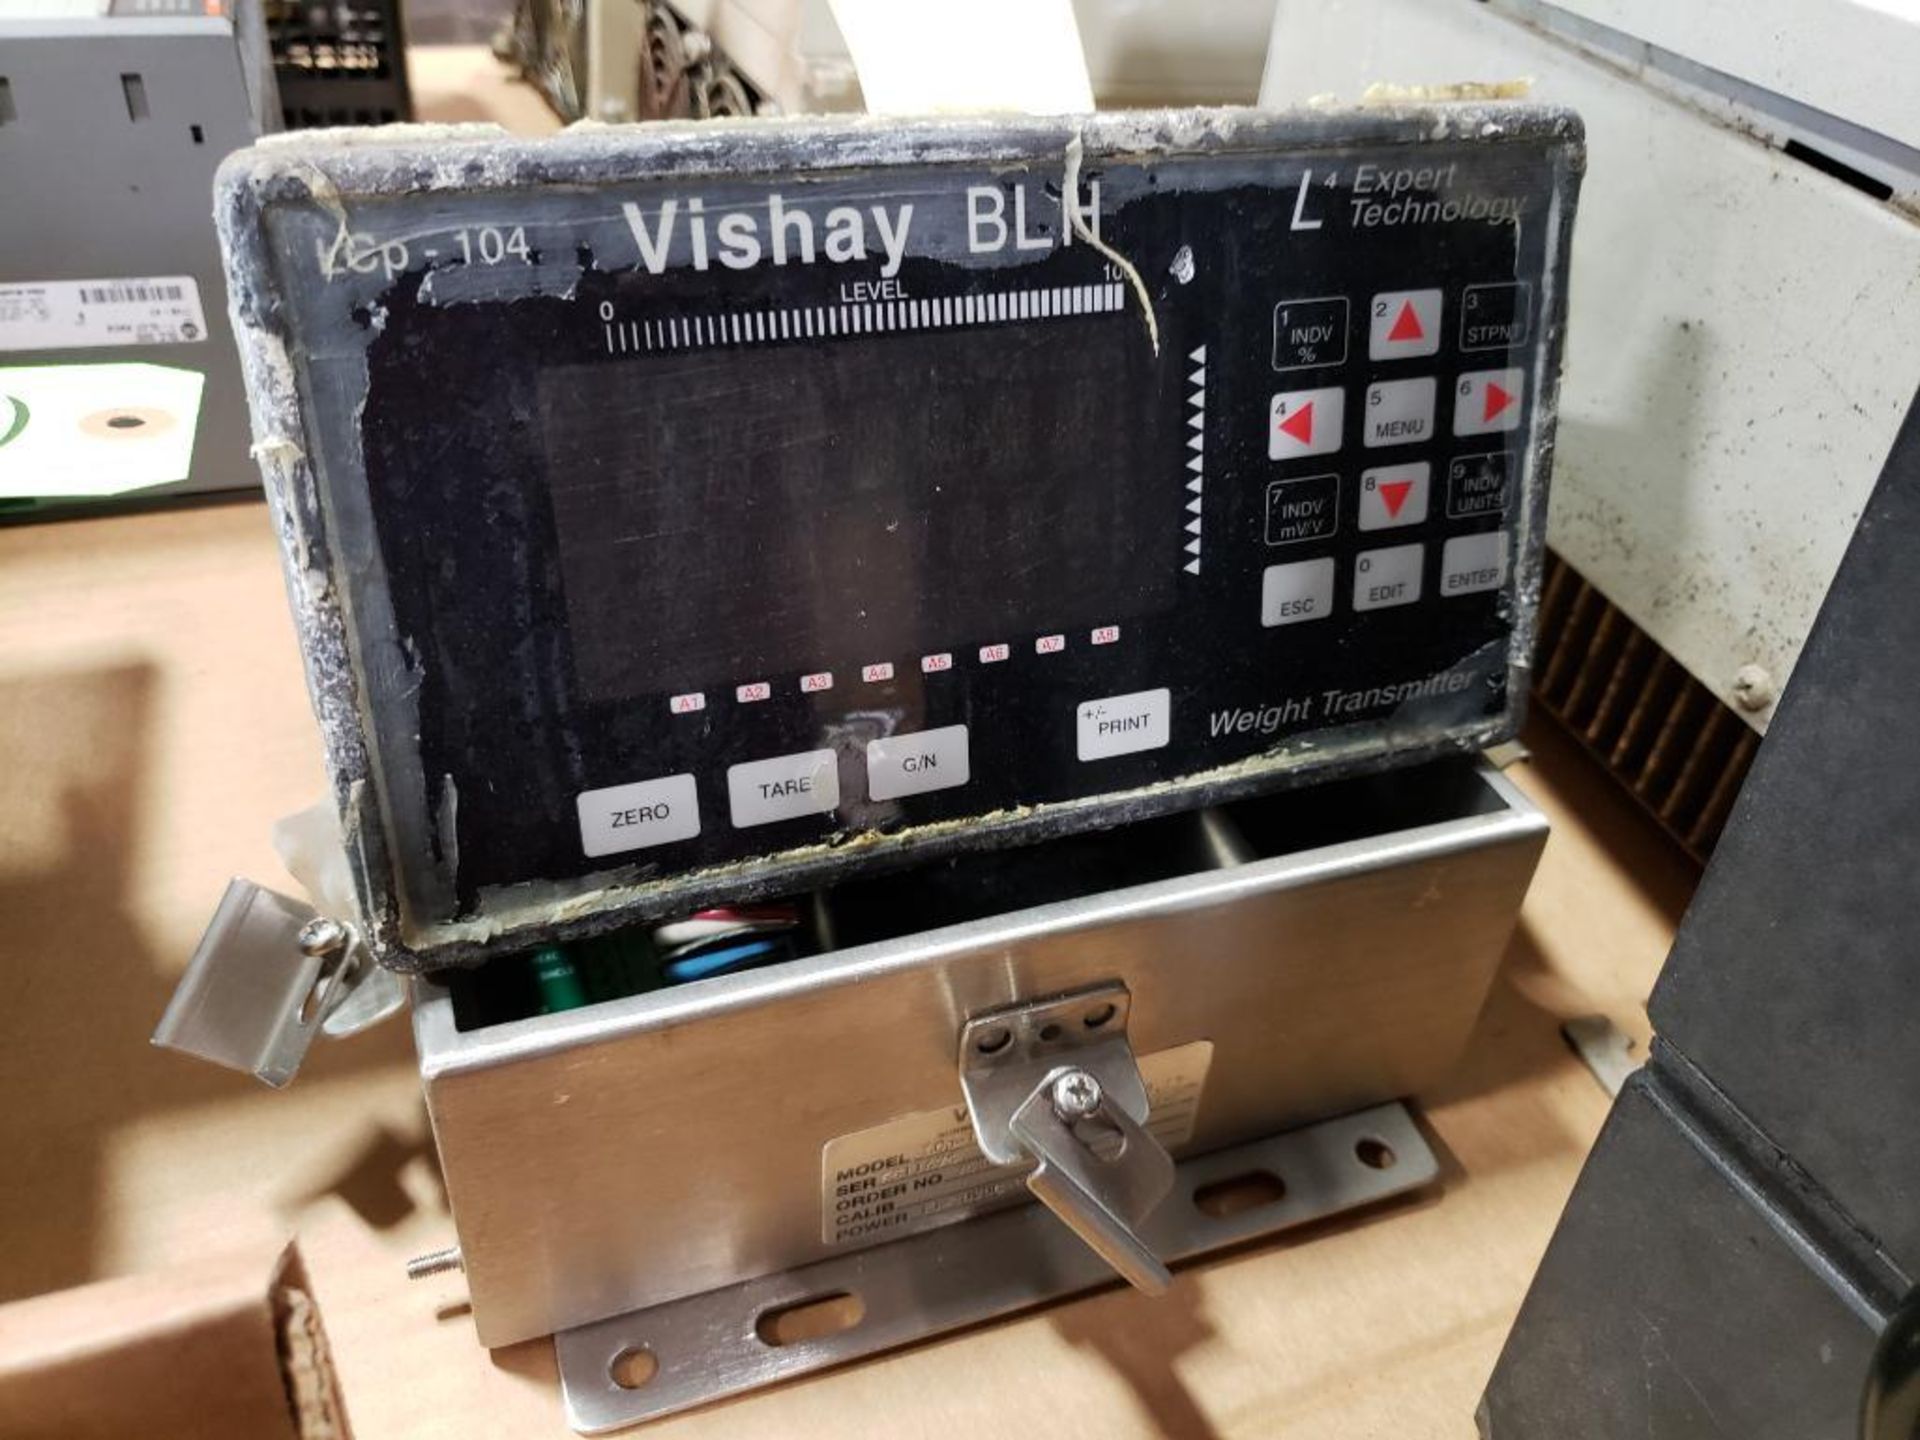 Expert Technology Vishay BLH. LCp-104.